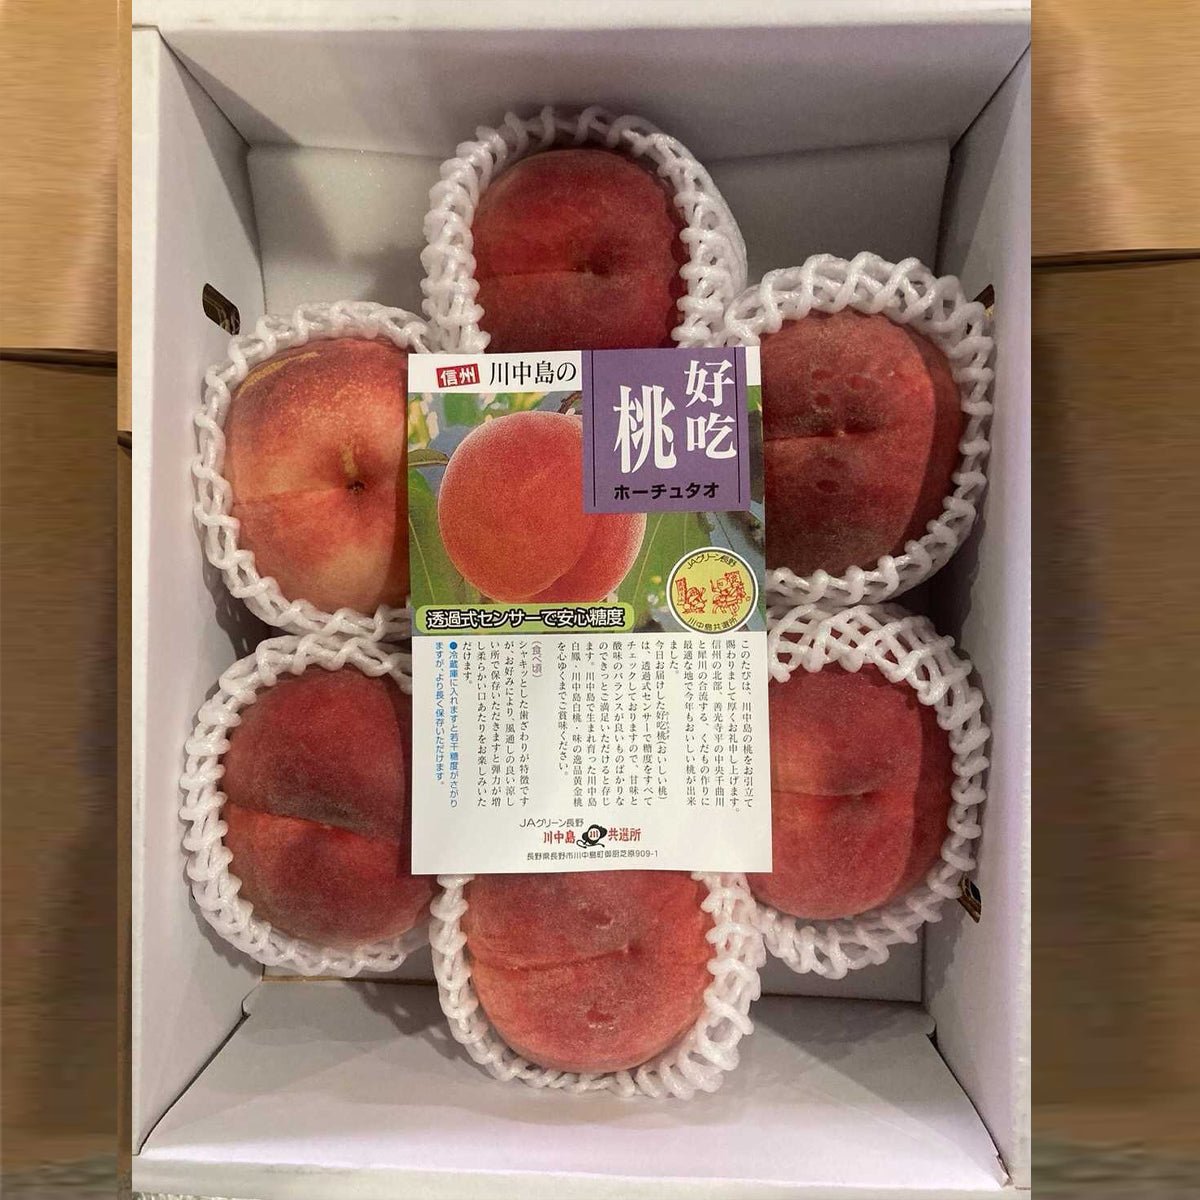 Nagano Kawanakajima NATSUKKO Peach 2kg Gift Box (夏っ子) "好吃桃" - Tokyo Fresh Direct